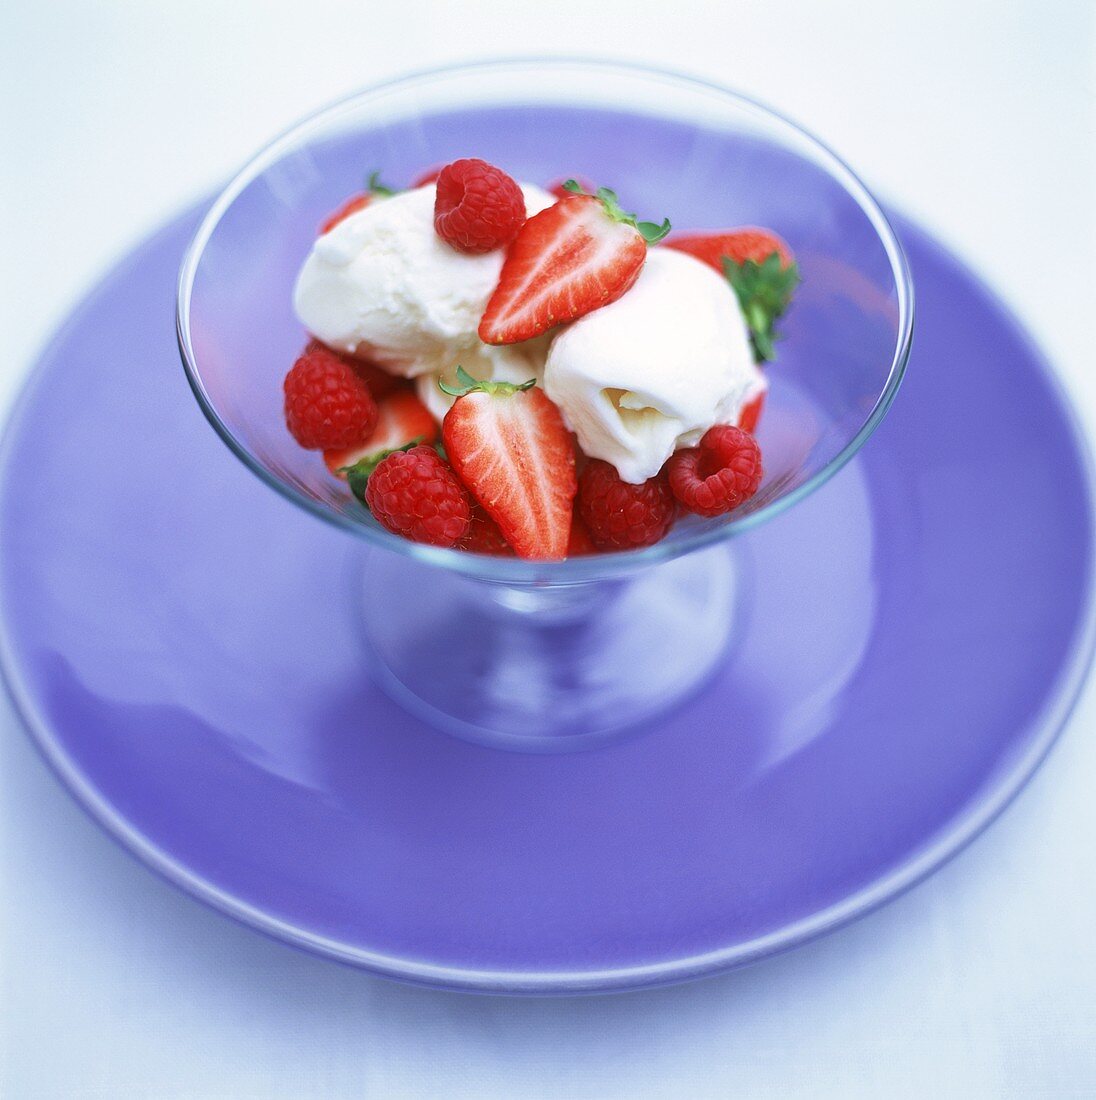 Vanilla ice cream with fresh strawberries & raspberries